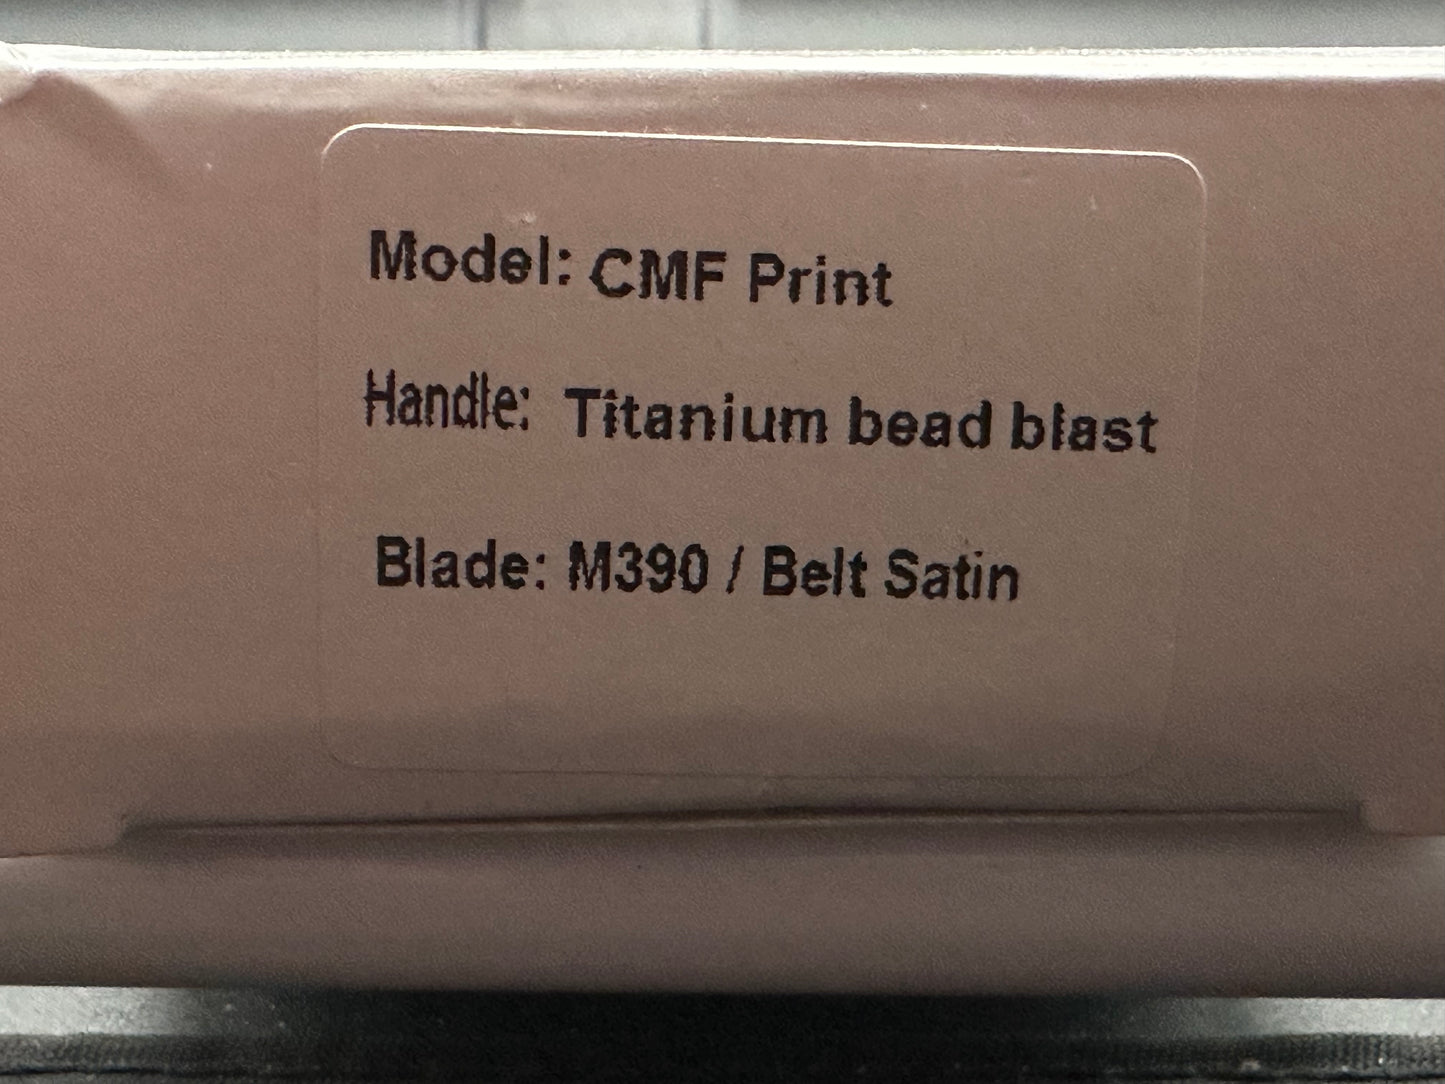 CMF Print FL all titanium bead blast m390